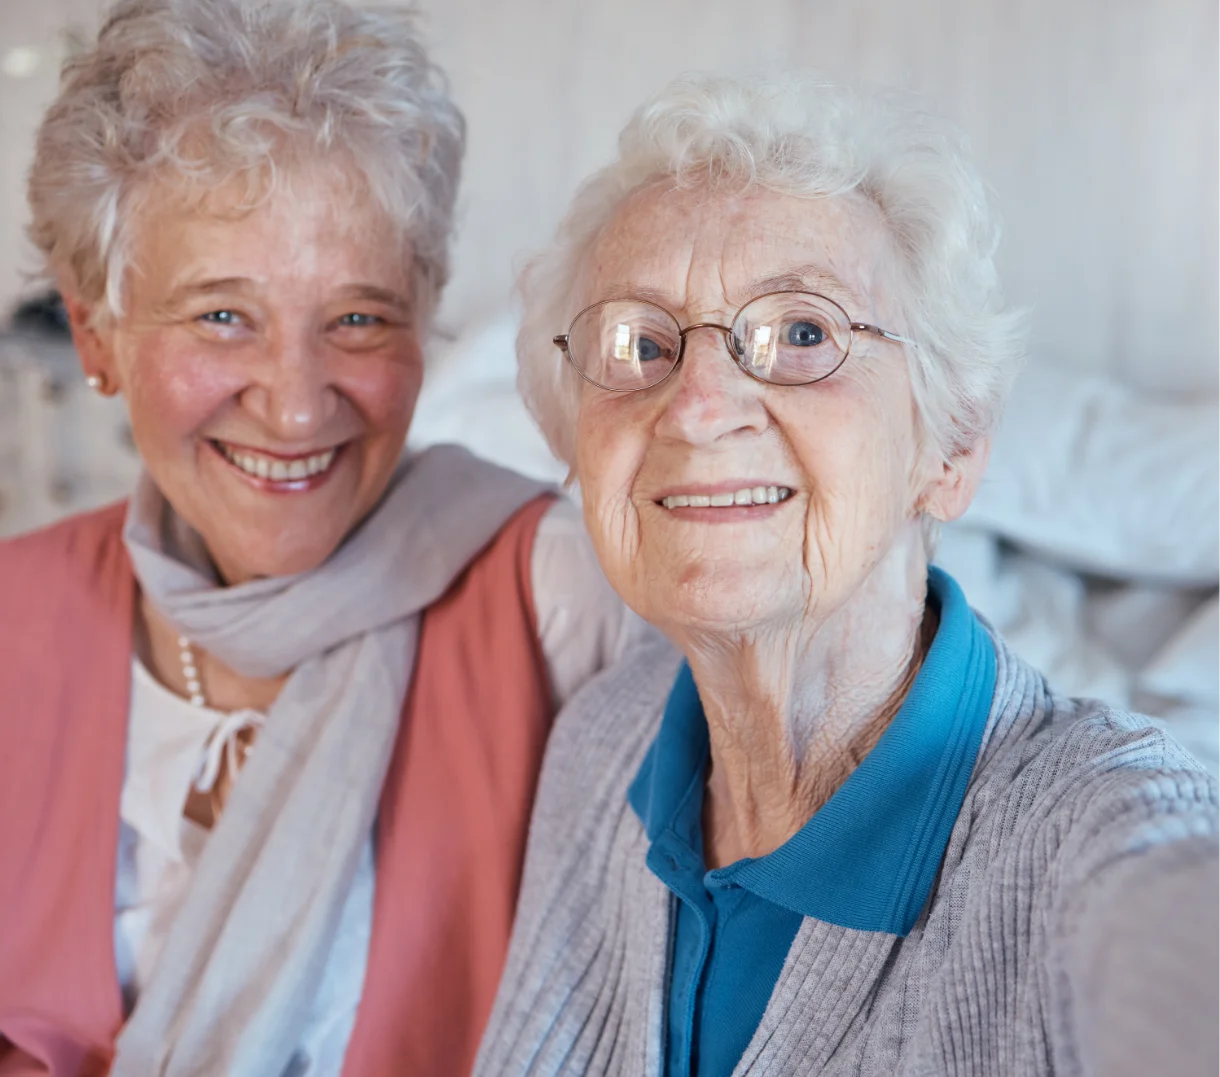 Smiling elderly senior women.